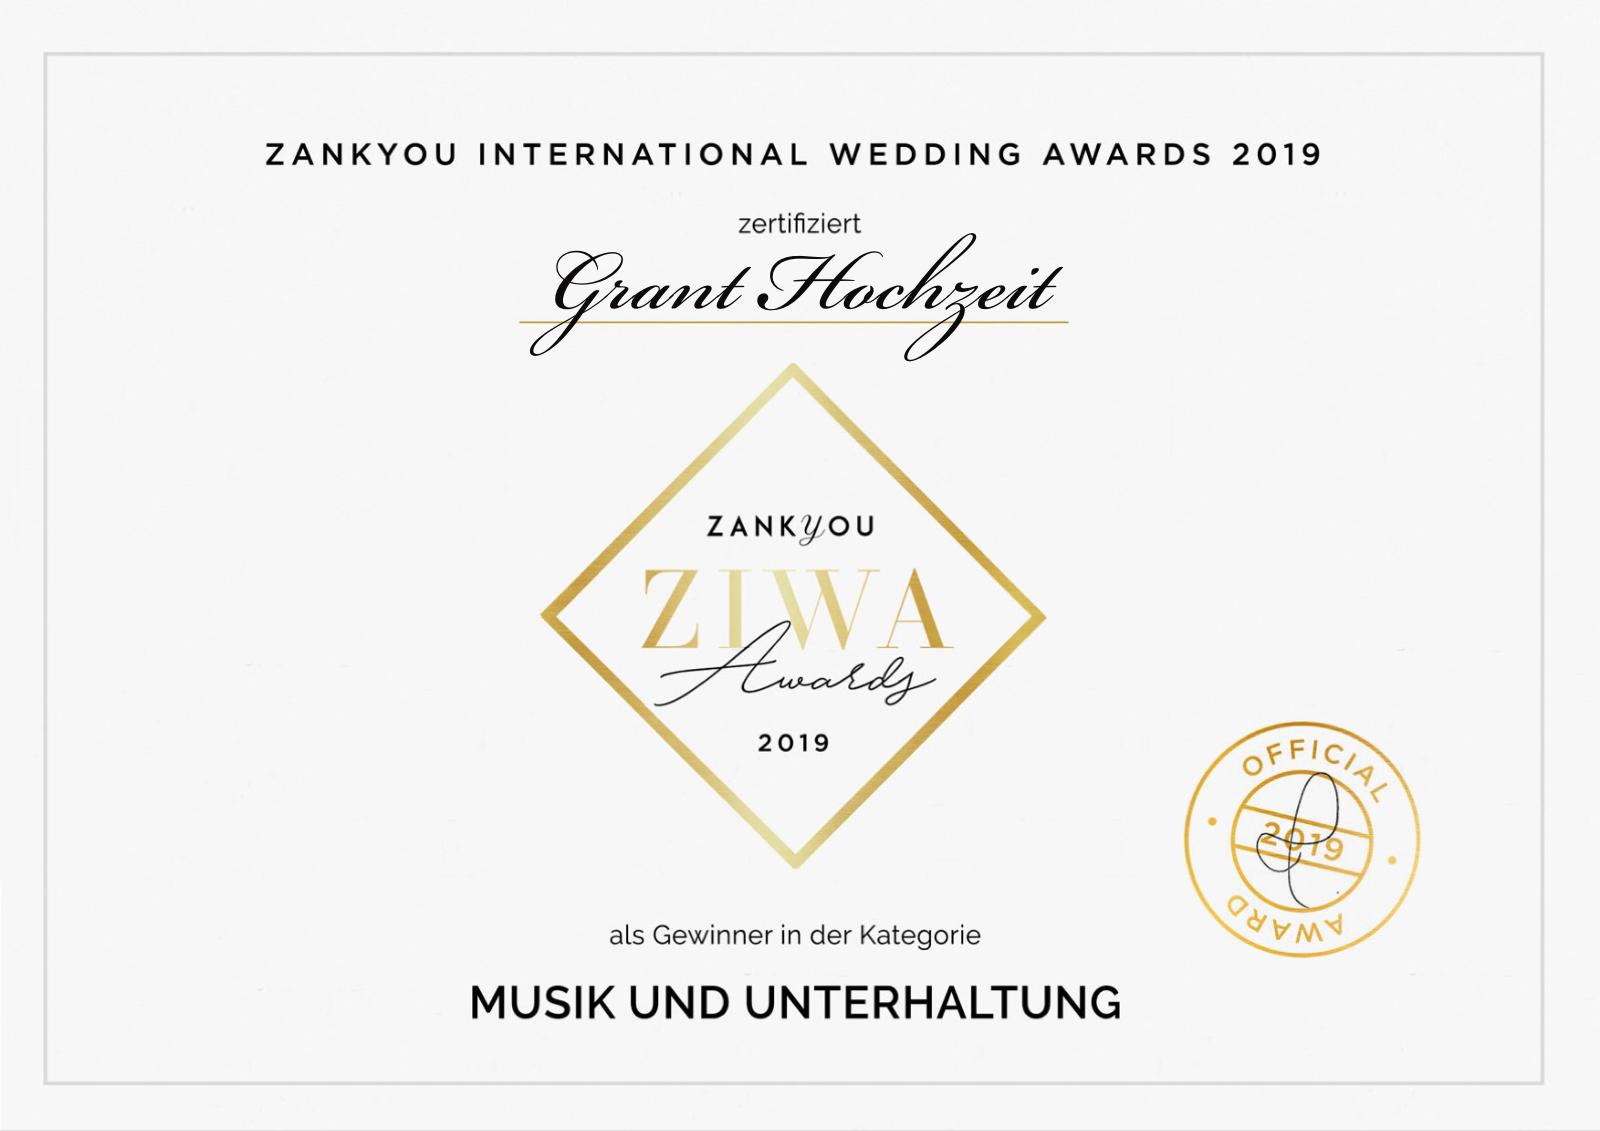 Grant Hochzeit hat den Ziwa Award 2019 im der Kategorie Musik und Unterhaltung gewonnen.